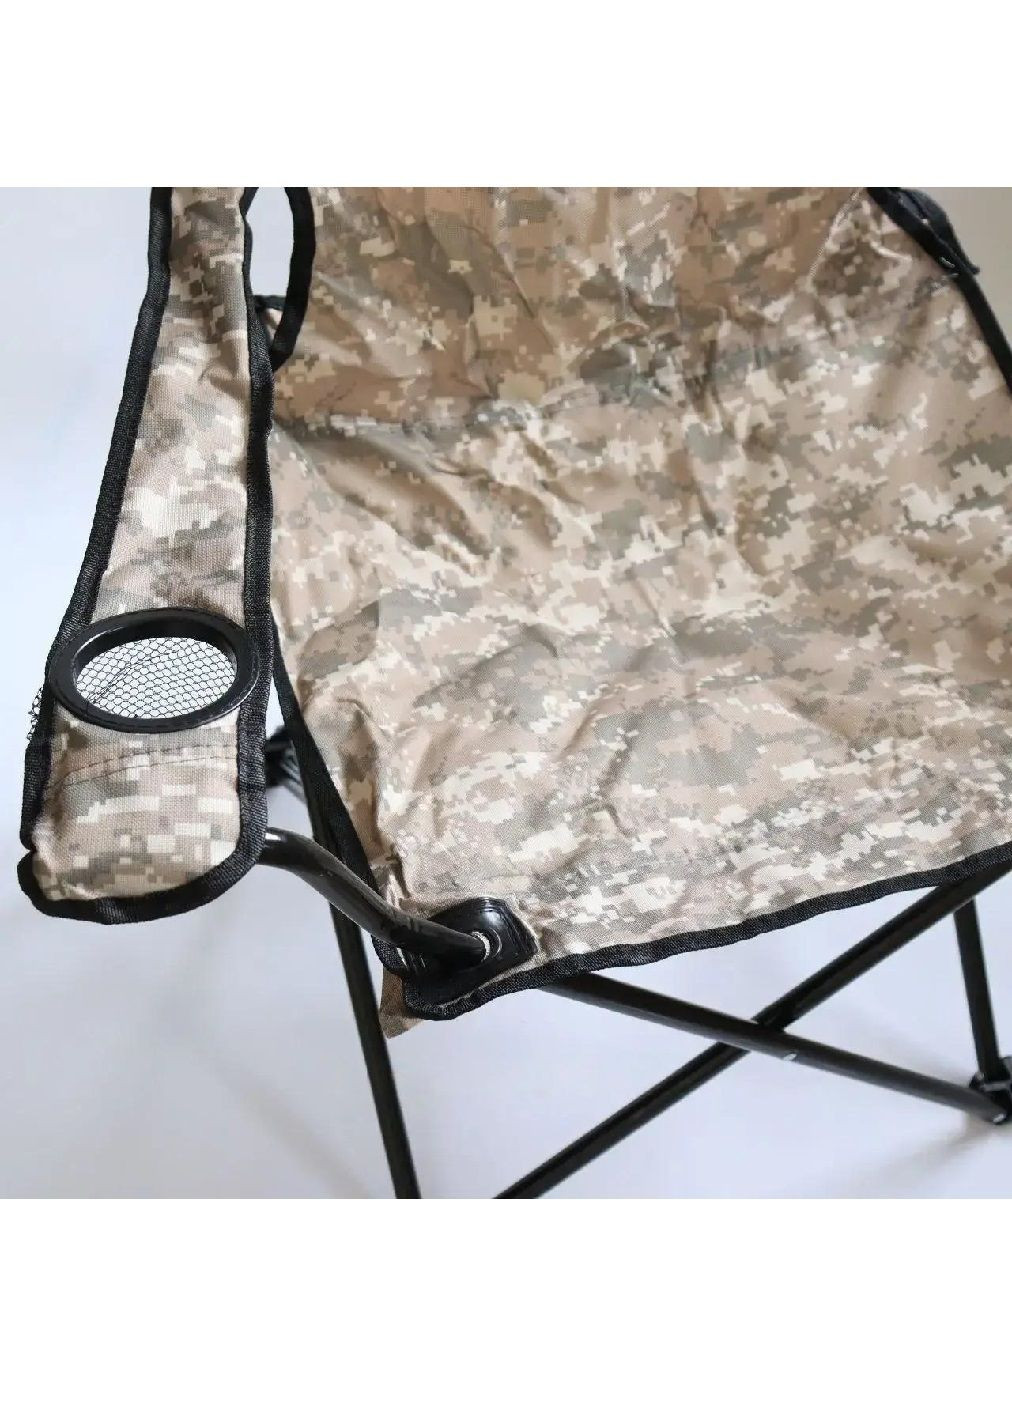 Комплект набор стул раскладной в чехле с пляжным ковриком для рыбалки походов туризма кемпинга (476869-Prob) Камуфляж Unbranded (292111601)